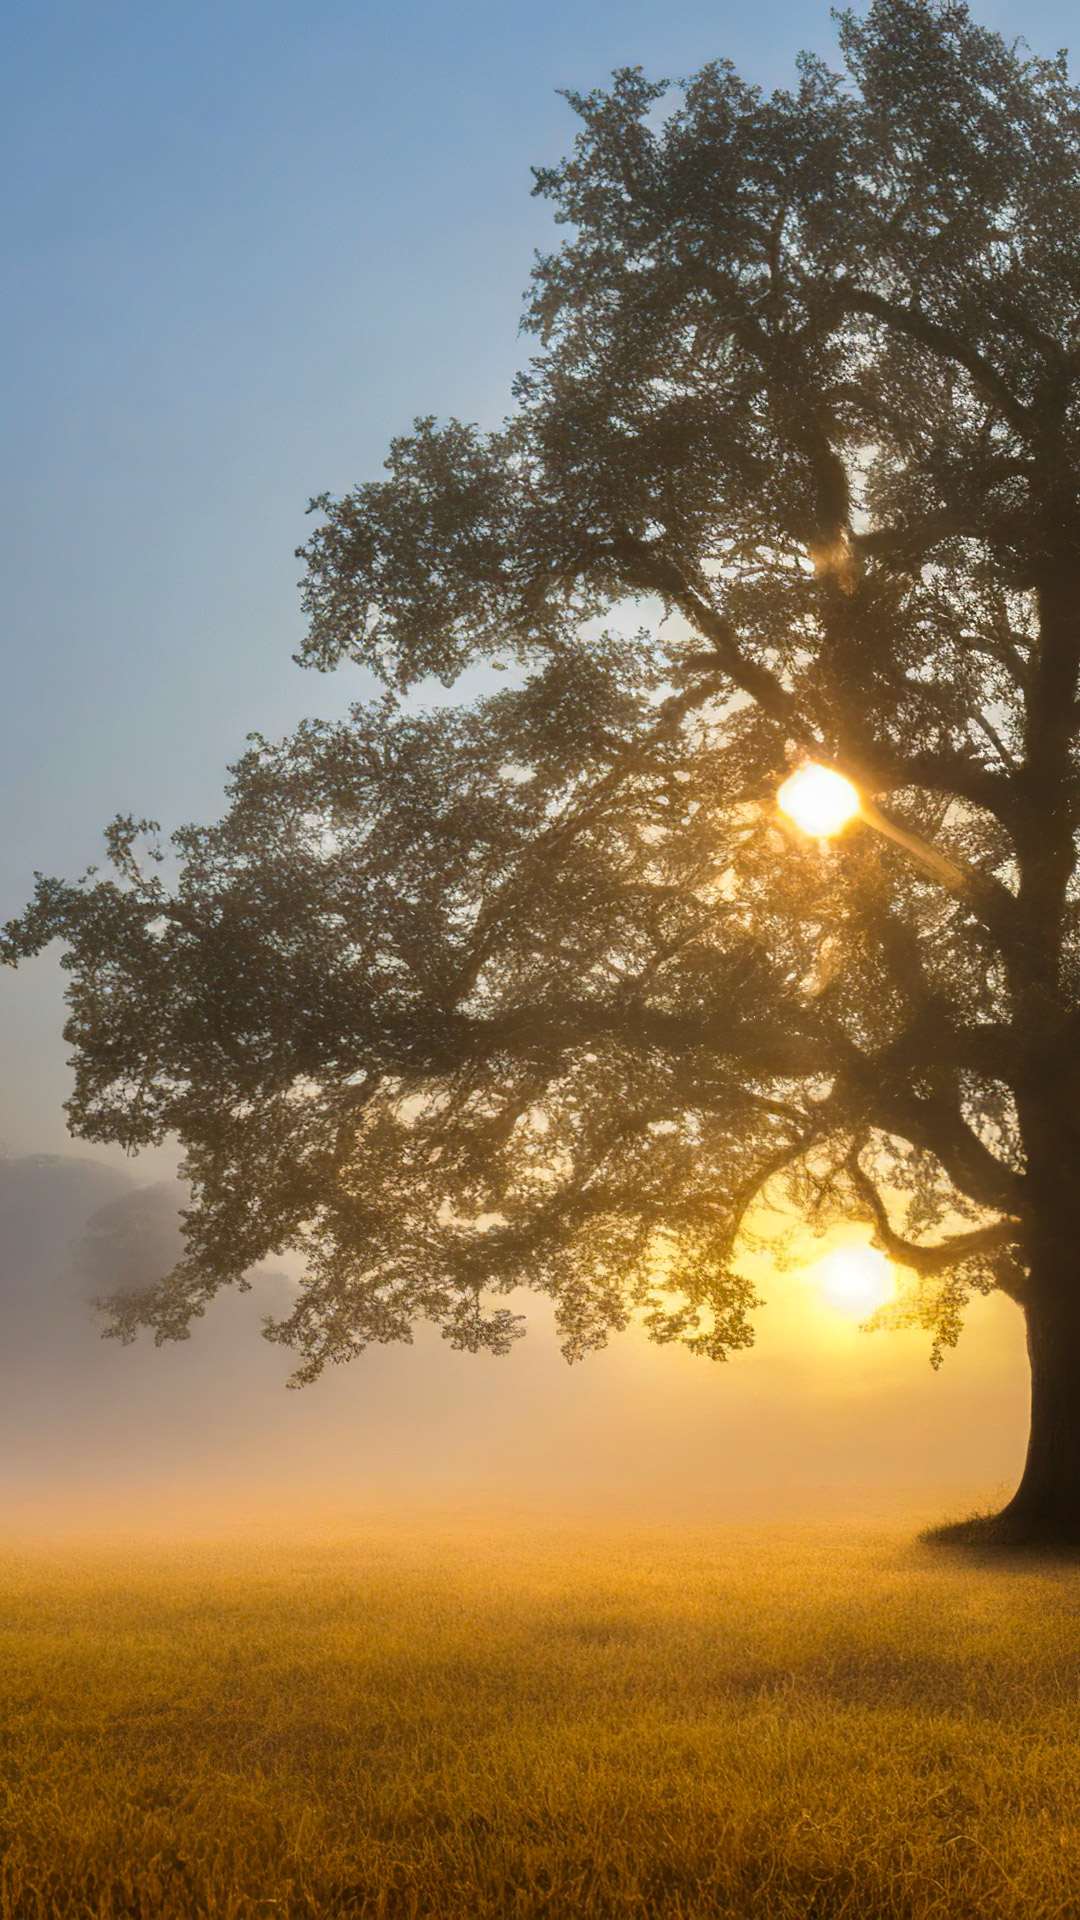 Goûtez à la nature avec notre arrière-plan naturel haute résolution, capturant un chêne majestueux se tenant seul dans un champ brumeux, avec en toile de fond le lever du soleil.